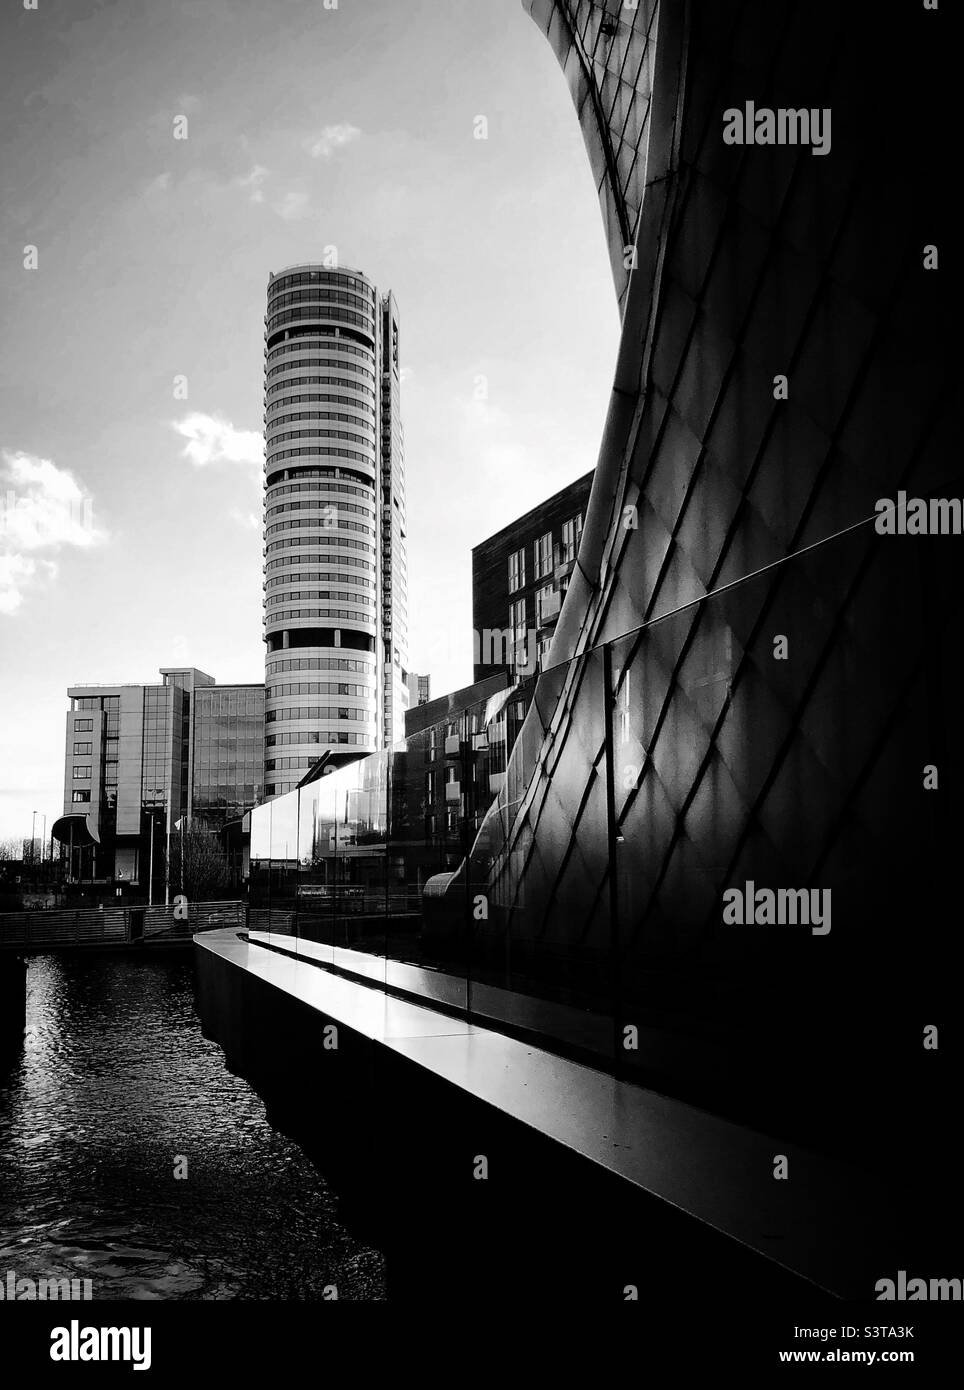 Moderne Architektur in Schwarz und Weiß mit dem hohen Wolkenkratzer des Bridgewater Place in der Stadt Leeds an der Granary Wharf Stockfoto